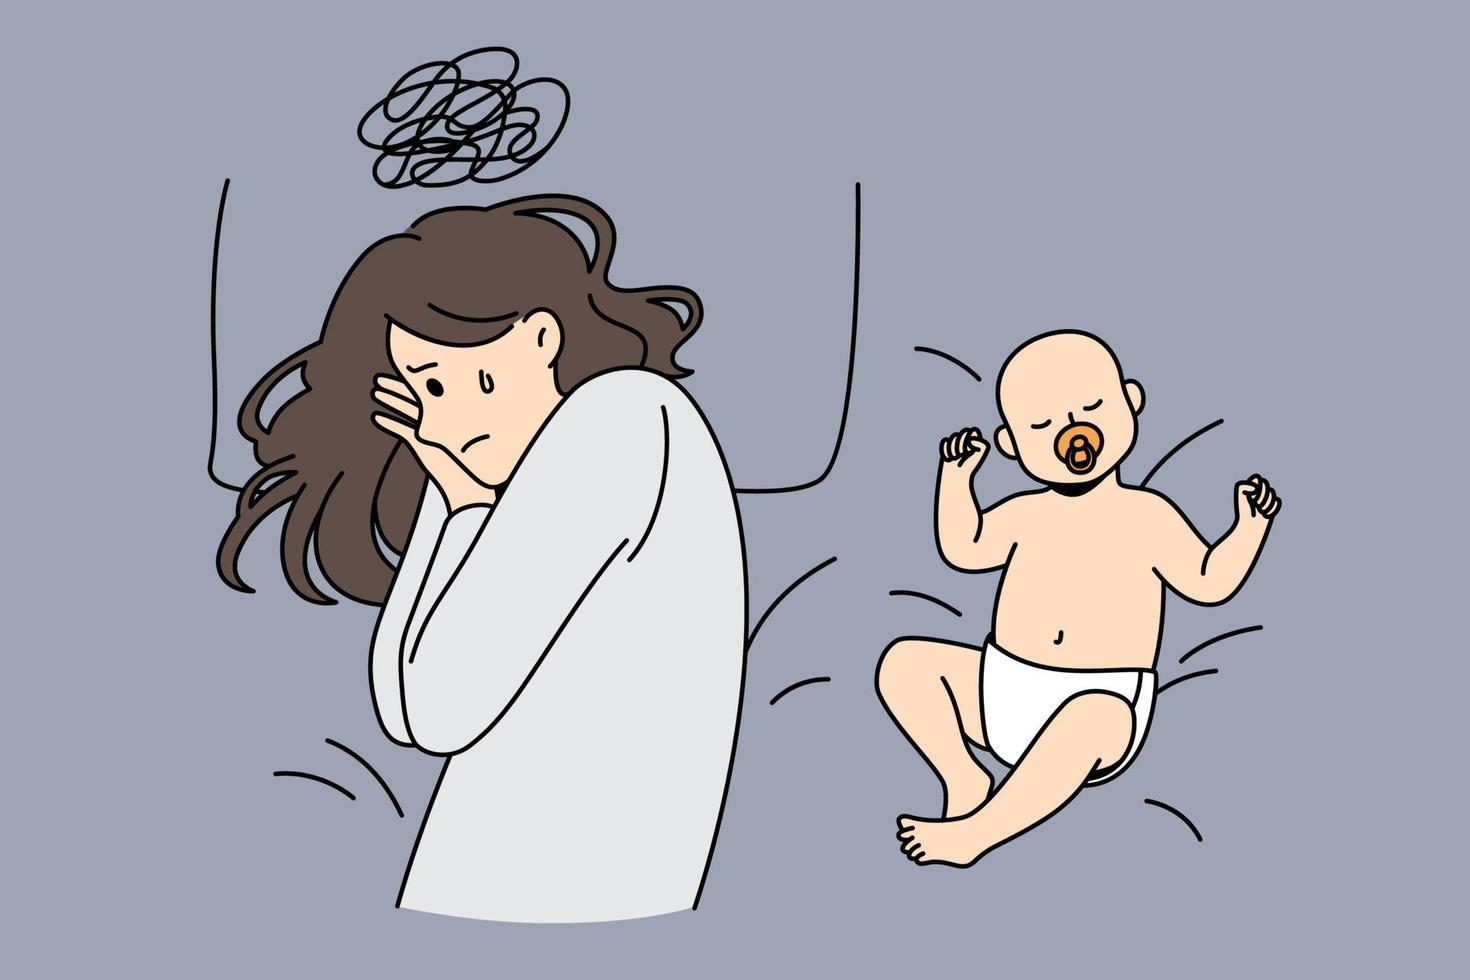 depressão pós-parto e conceito de paternidade. jovem mãe triste deprimida com pensamentos difíceis deitada na cama com bebê dormindo feliz nas proximidades ilustração vetorial vetor